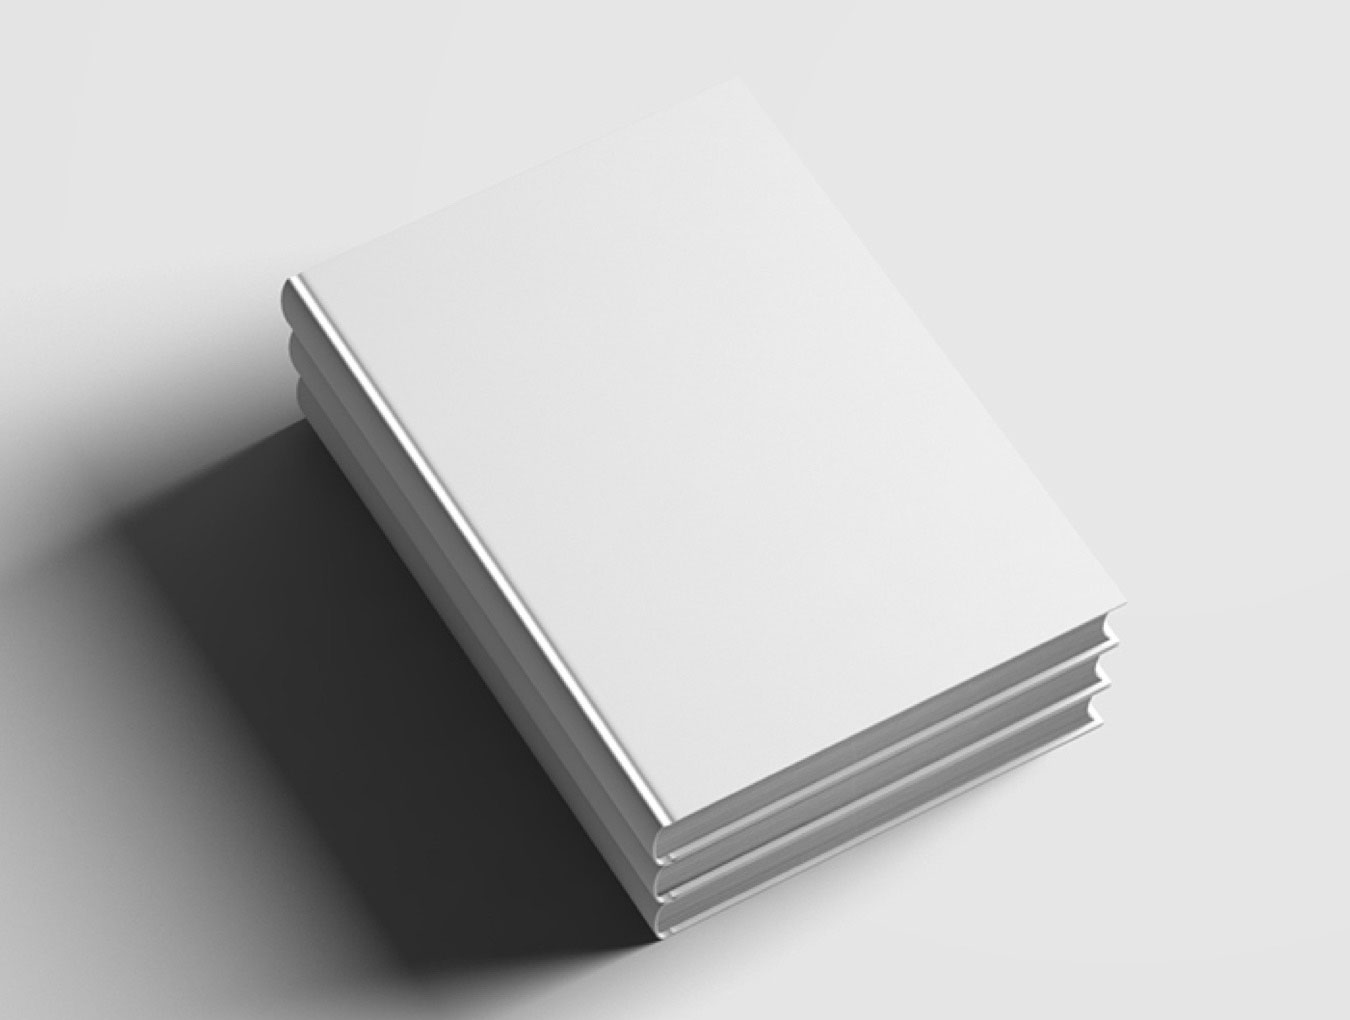 多角度硬装书籍设计封面内页展示贴图PSD样机模型book mockup